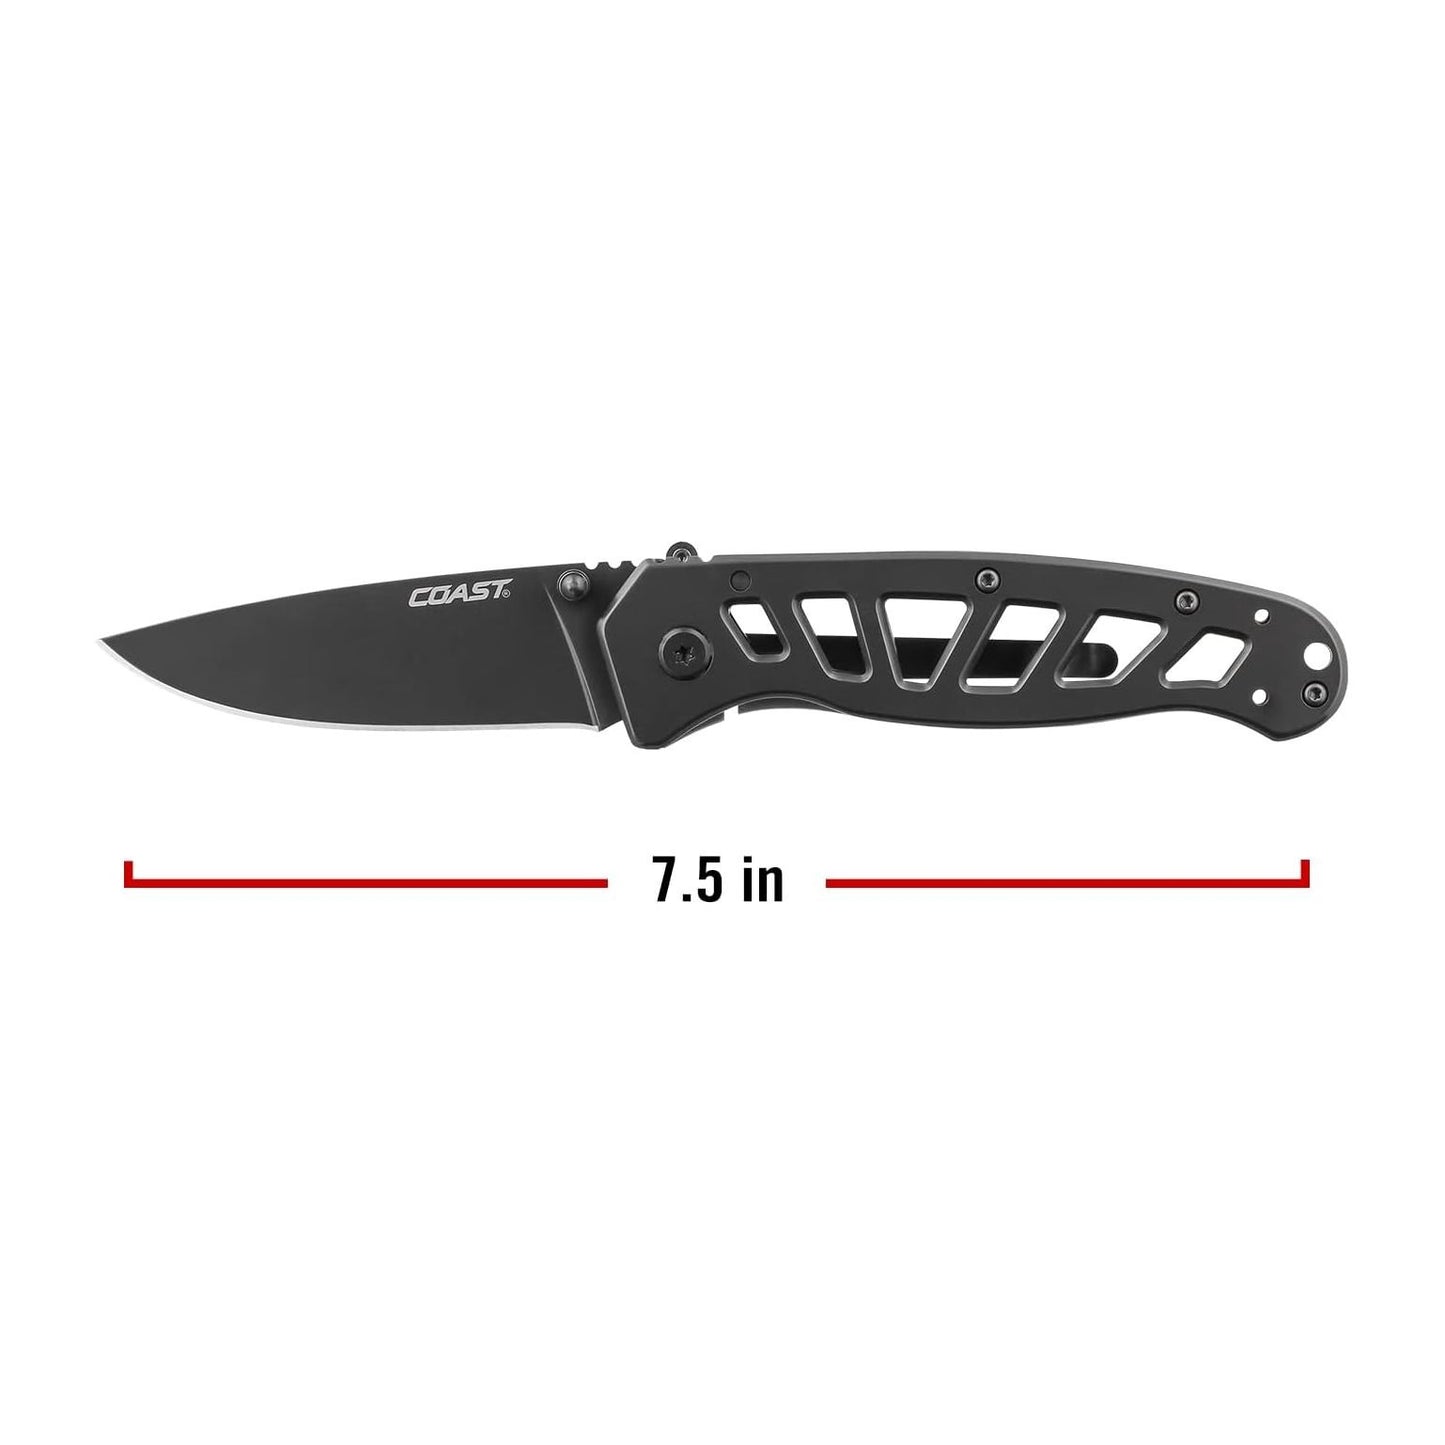 FDX302 - Double Lock Folding Knife